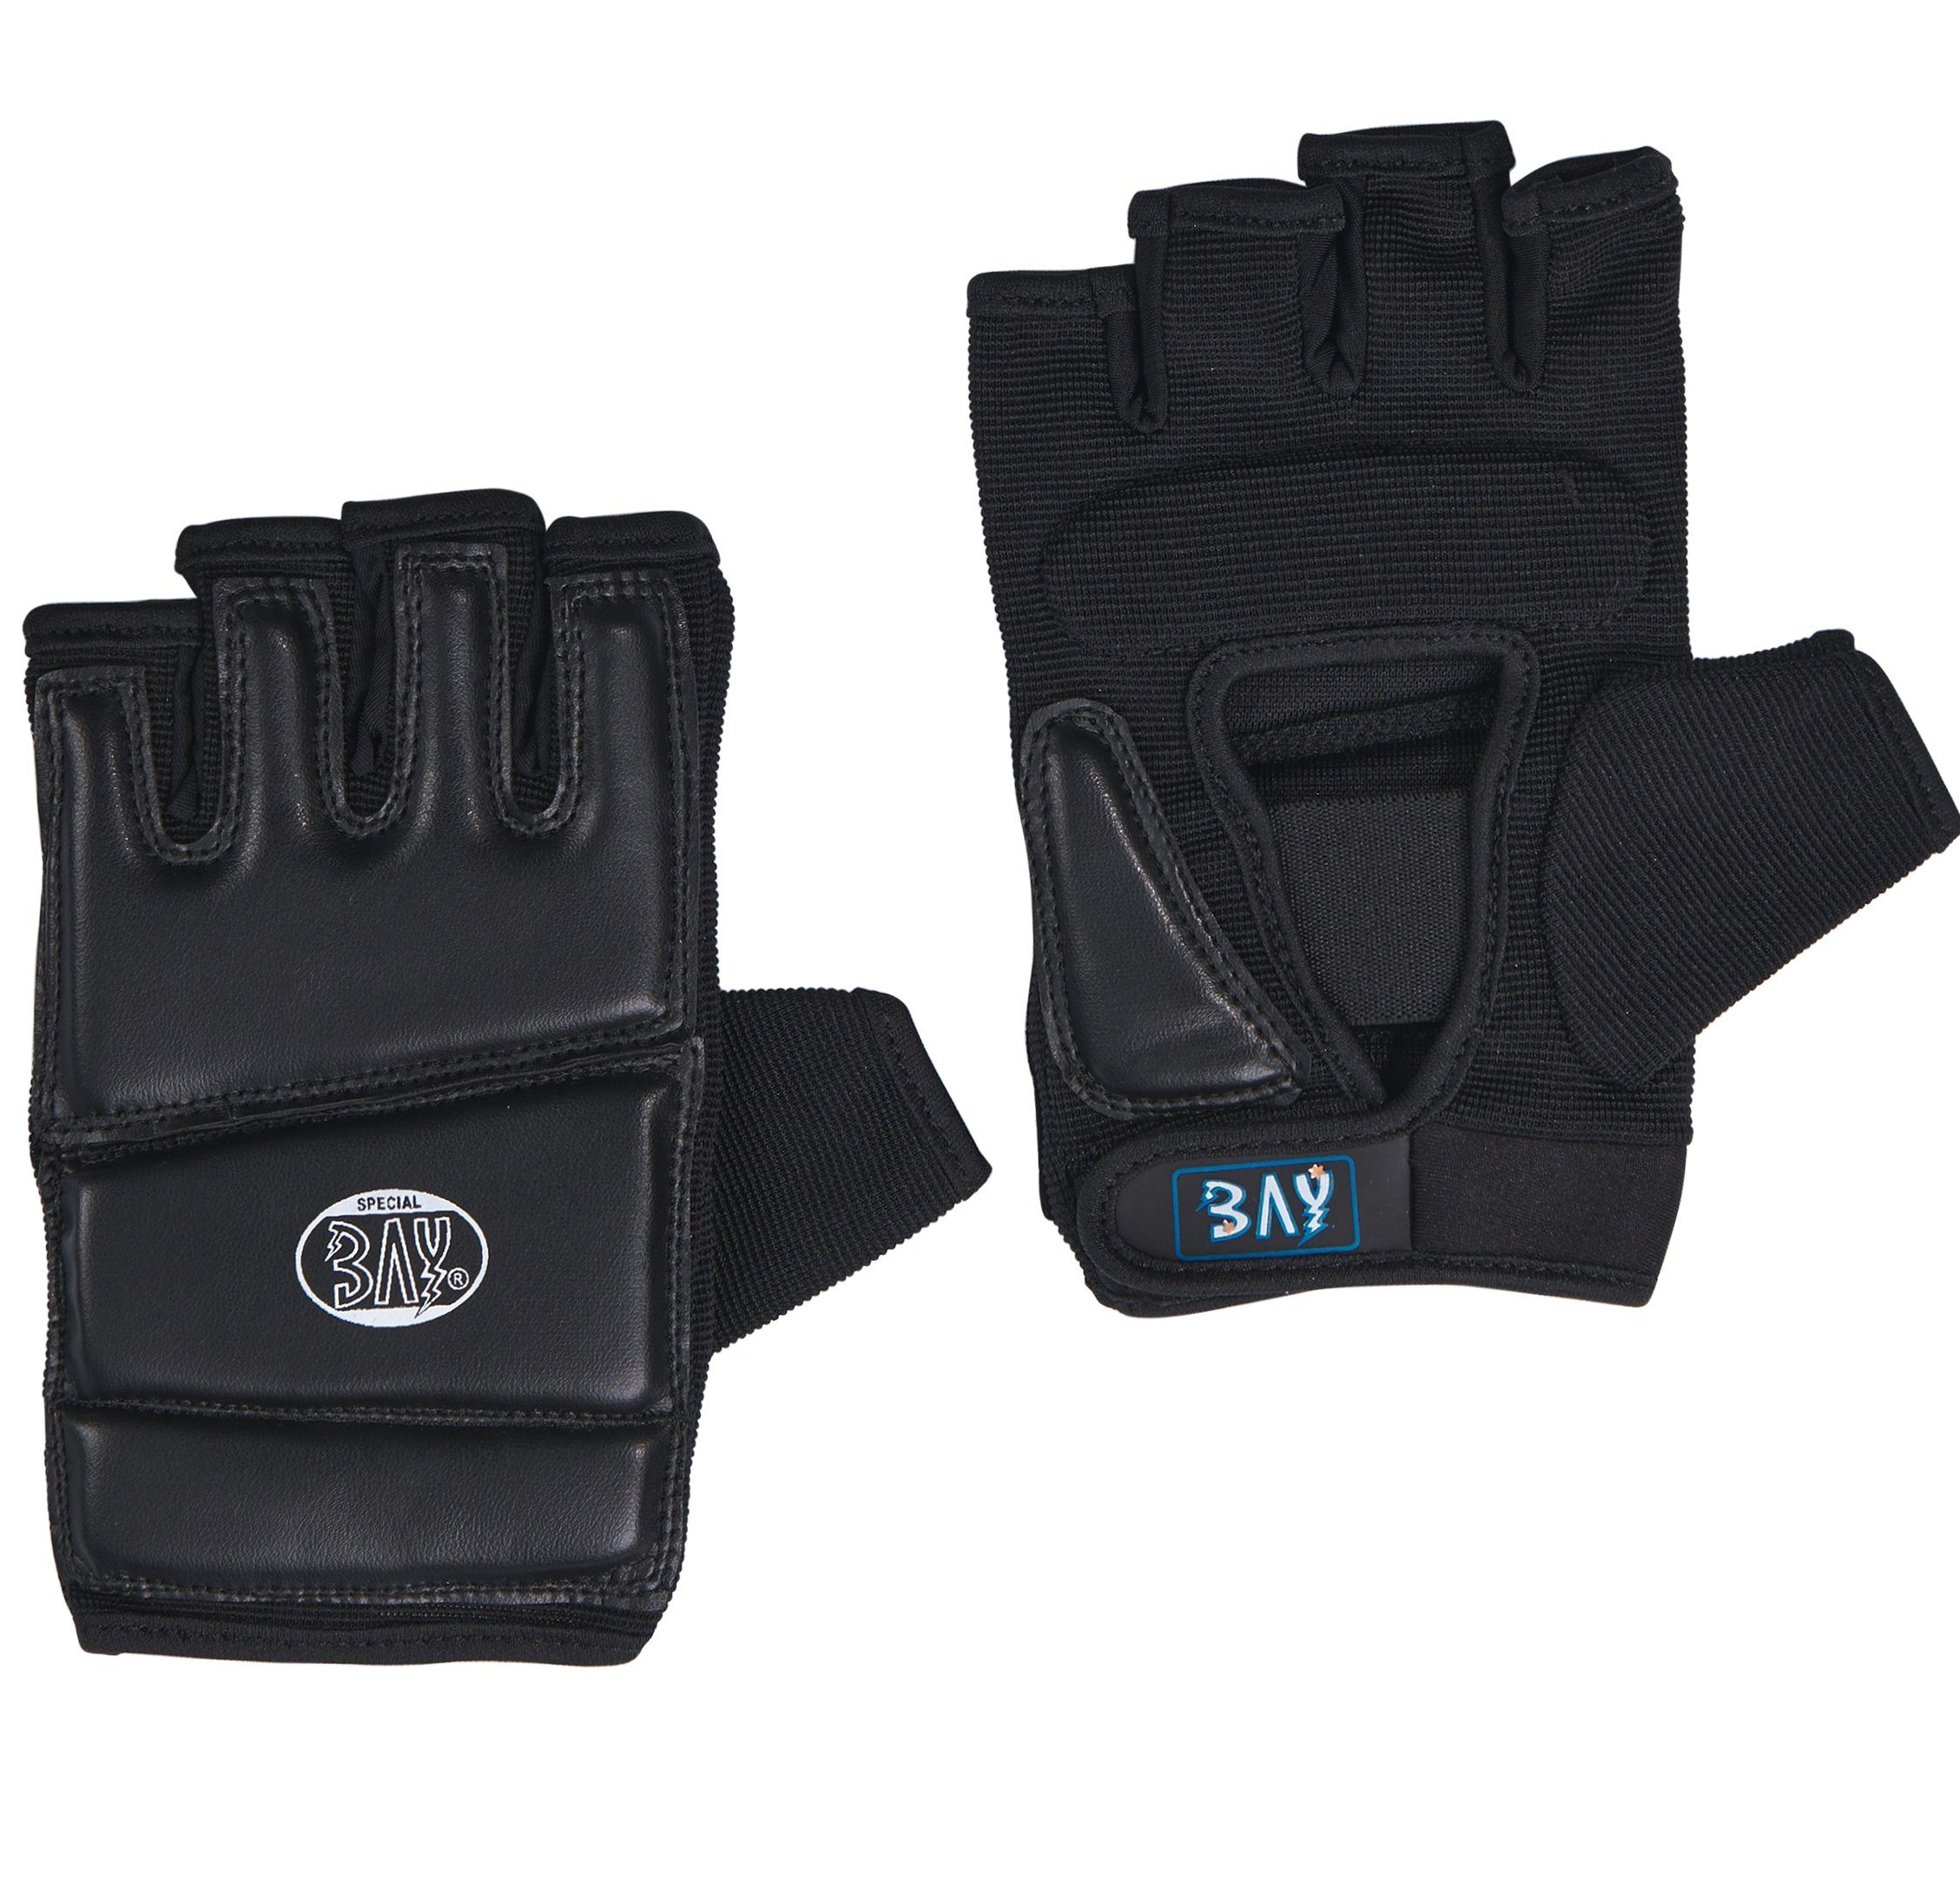 Kinder und XXL BAY-Sports Sandsack Erwachsene - Boxhandschuhe Boxsack schwarz, Sandsackhandschuhe Handschutz Touch XXS